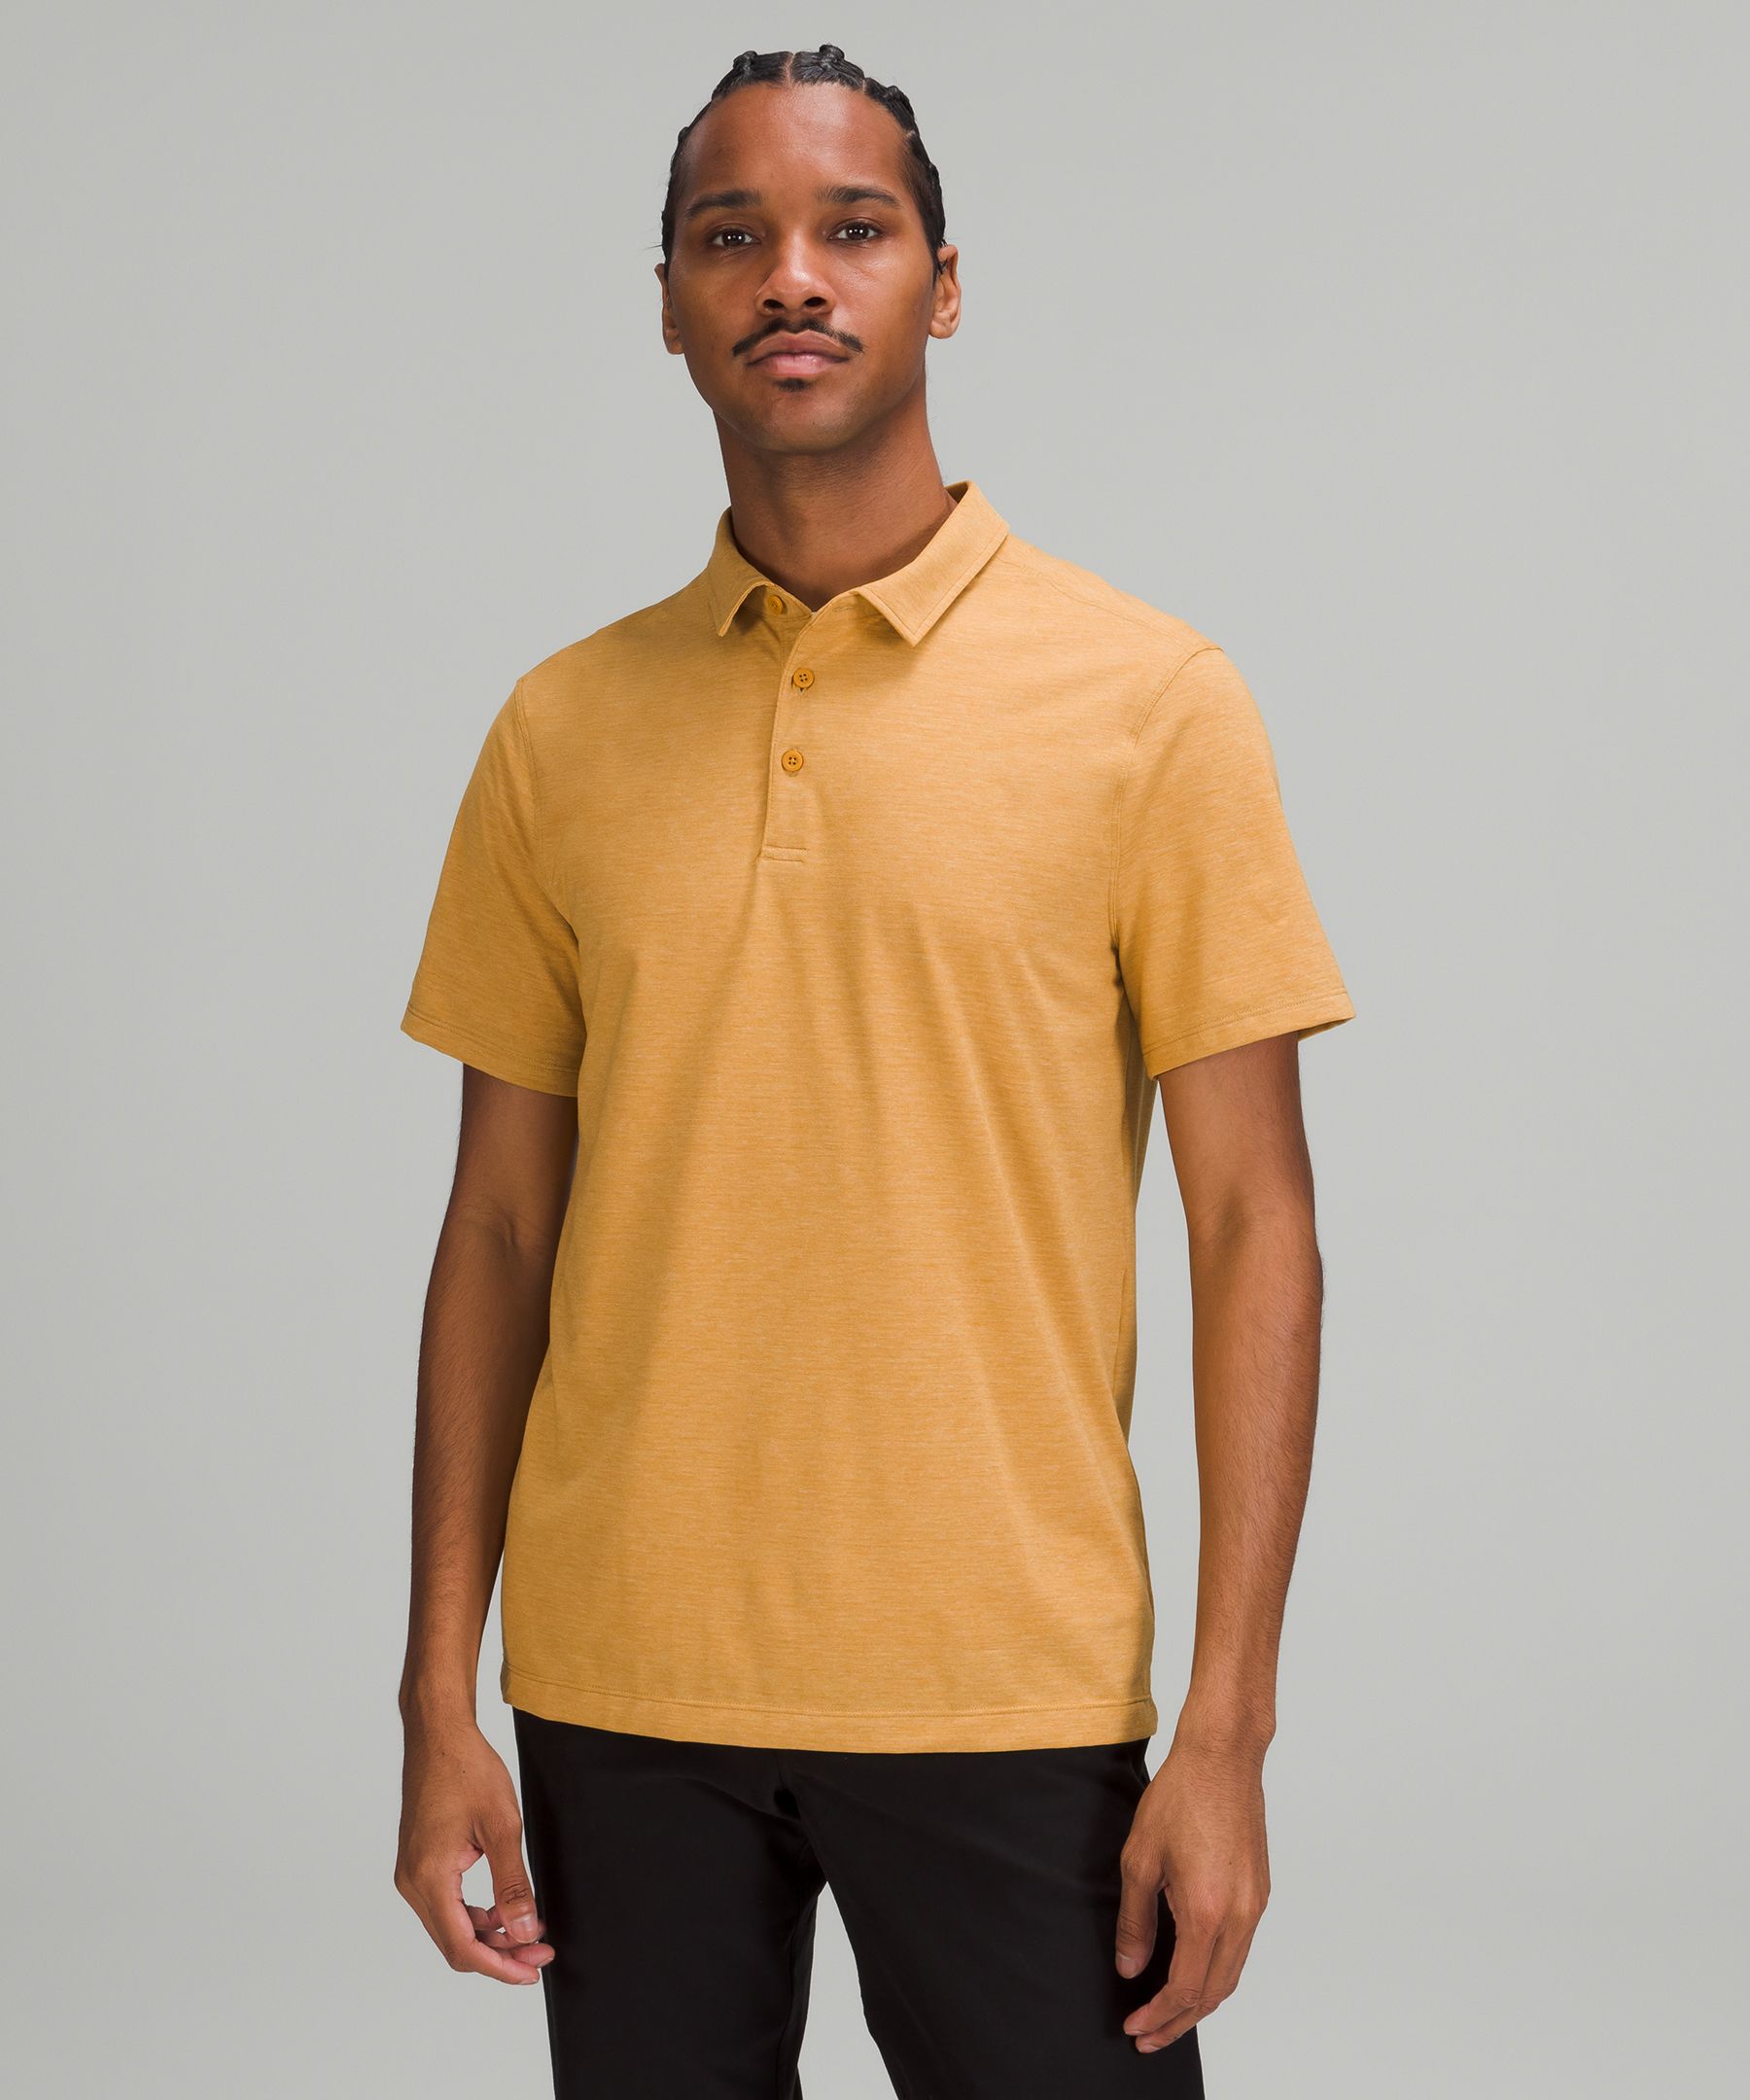 Lululemon Evolution Short Sleeve Polo Shirt In Orange